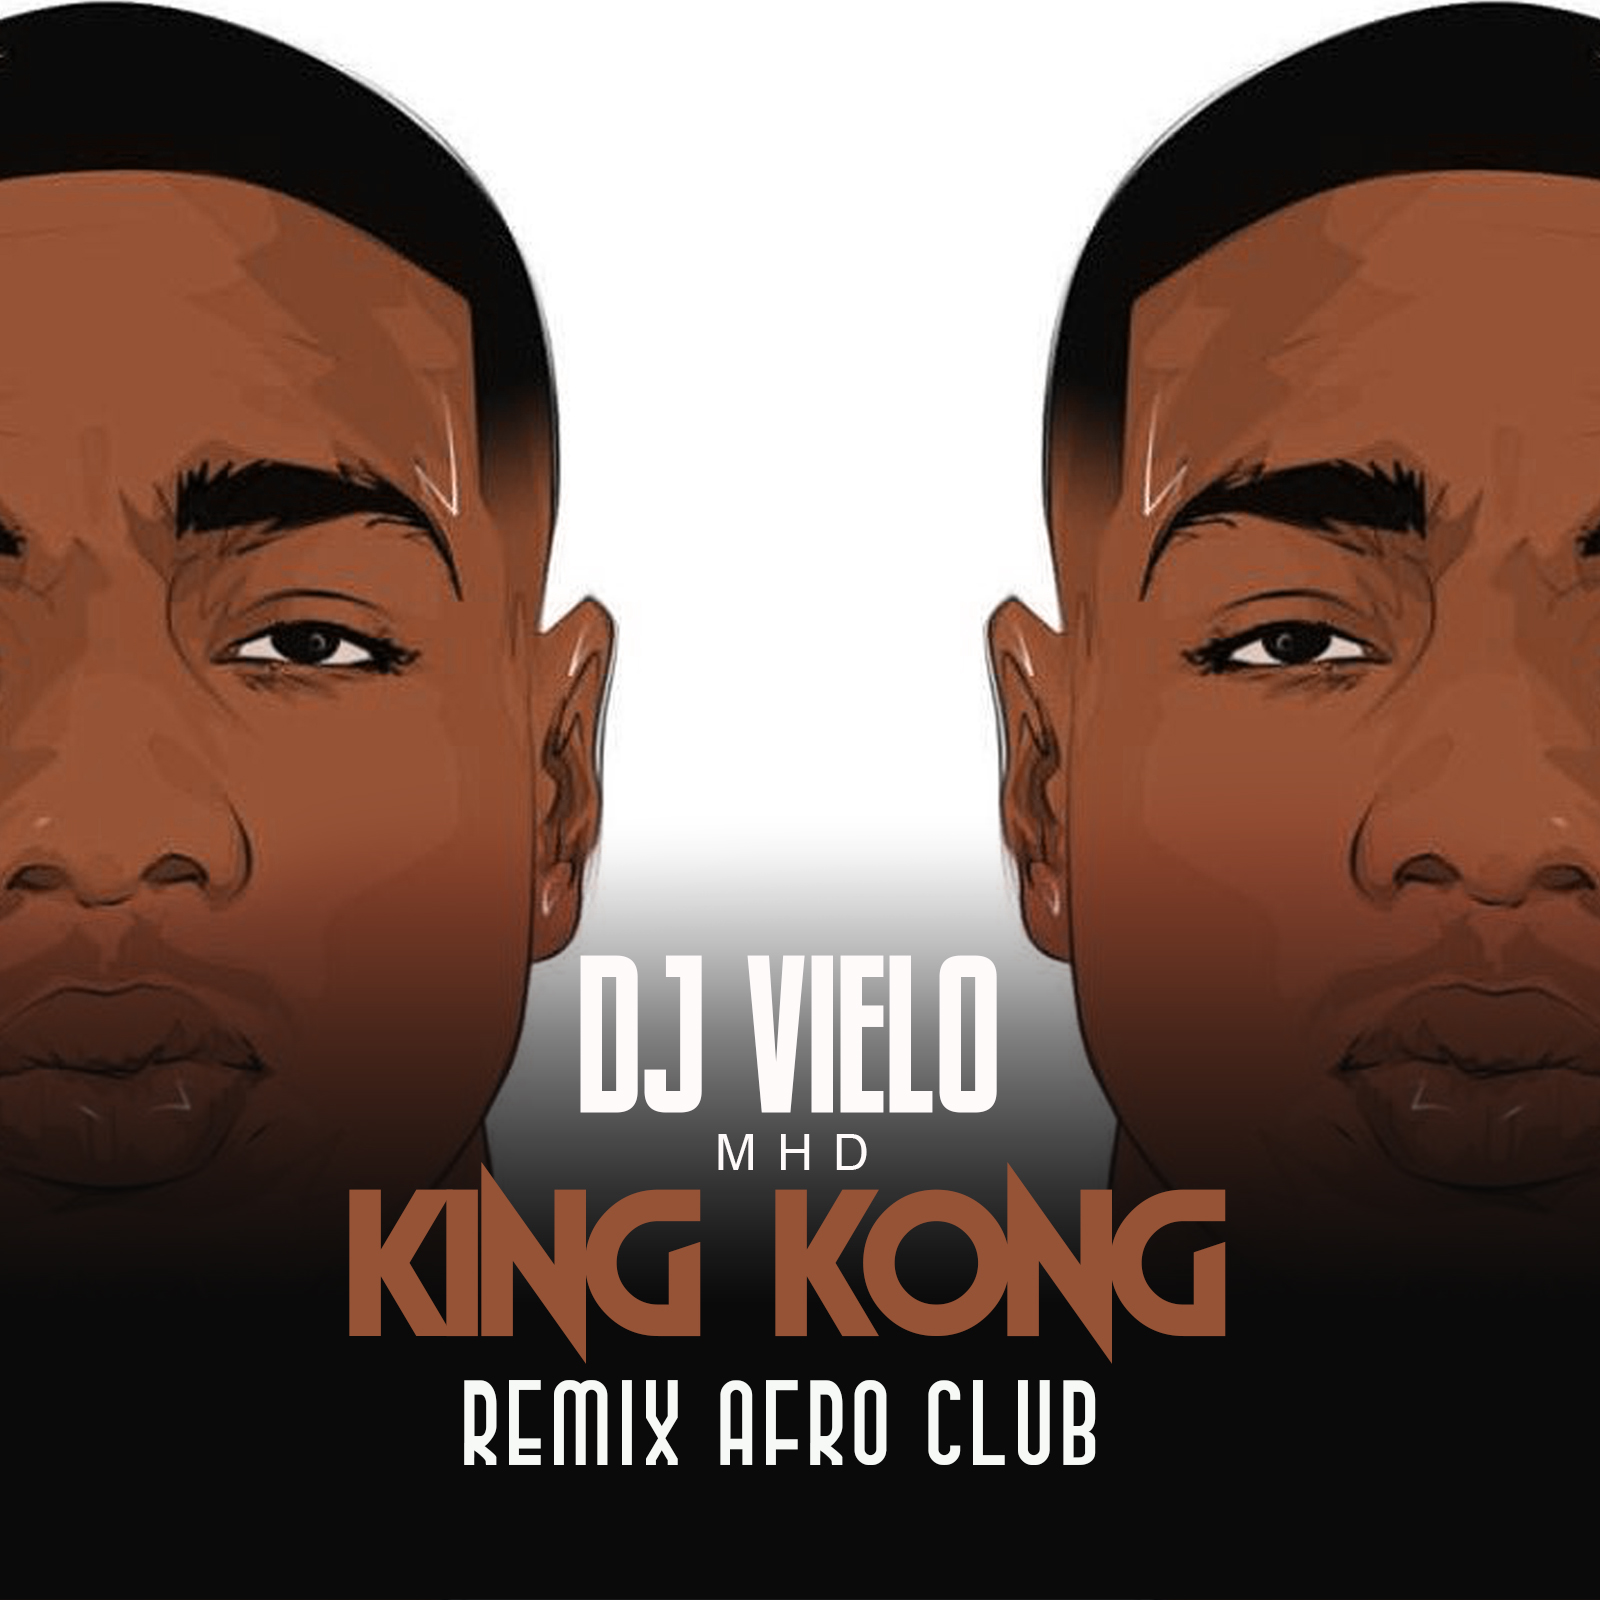 ಡೌನ್ಲೋಡ್ ಮಾಡಿ Dj Vielo X MHD - AFRO TRAP Part.11 (King Kong) Remix Afro Club DISPO SUR SPOTIFY, DEEZER, ITUNES